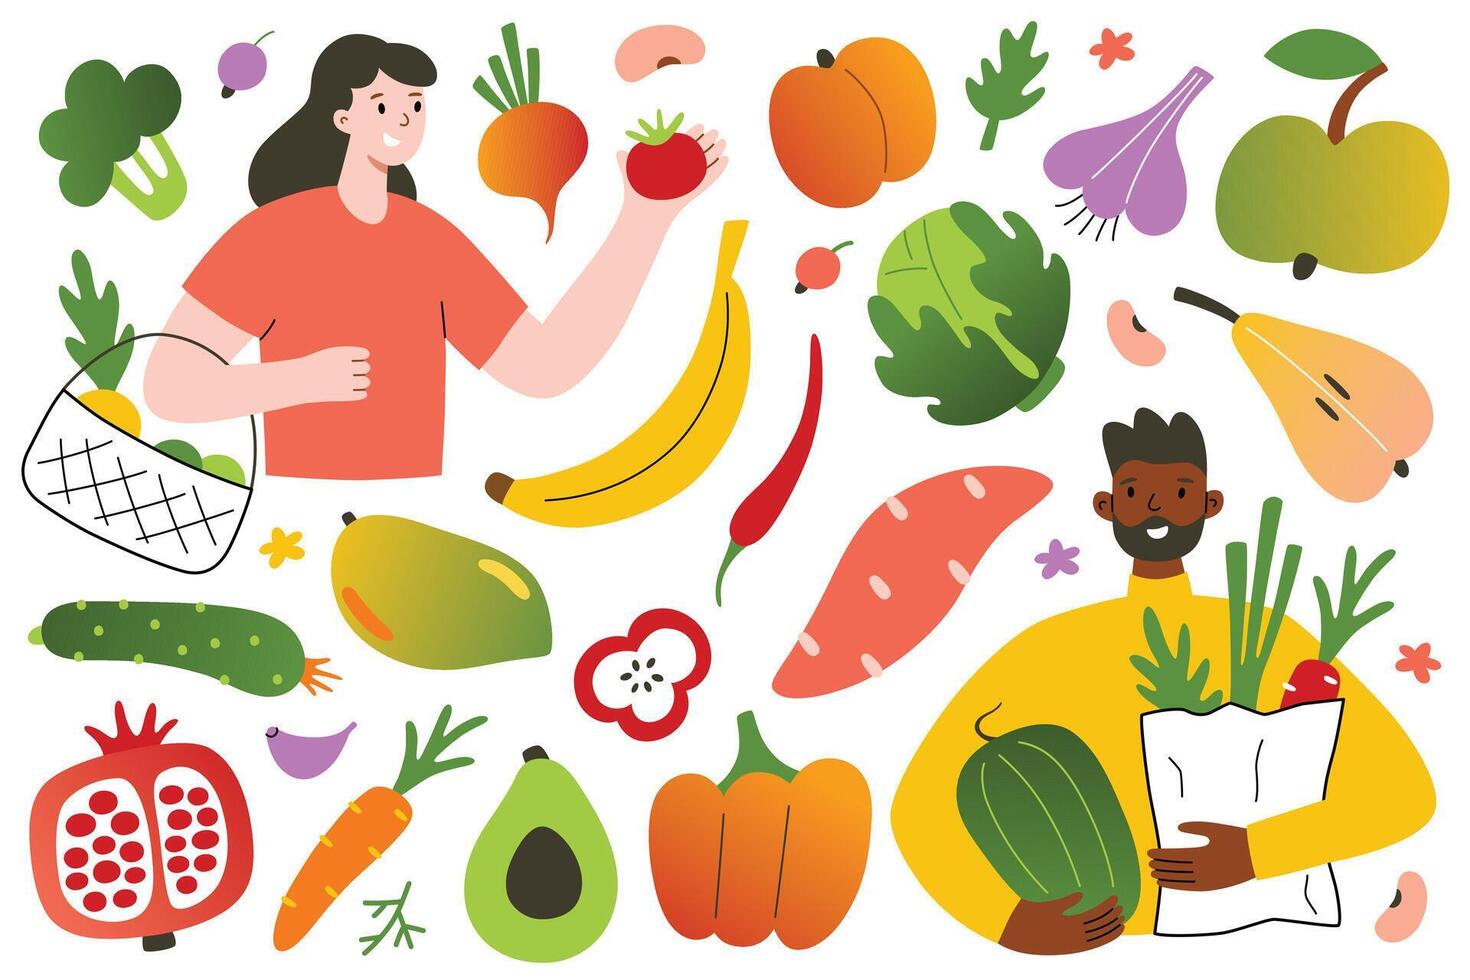 Menschen Essen und Kauf Obst und Gemüse, Lebensmittelgeschäft speichern, Öko vegan Lebensstil, organisch Essen Hand gezeichnet Satz, Symbole von Avocado, Mango, Kohl, Vektor Abbildungen von Männer und Frauen mit Gemüse